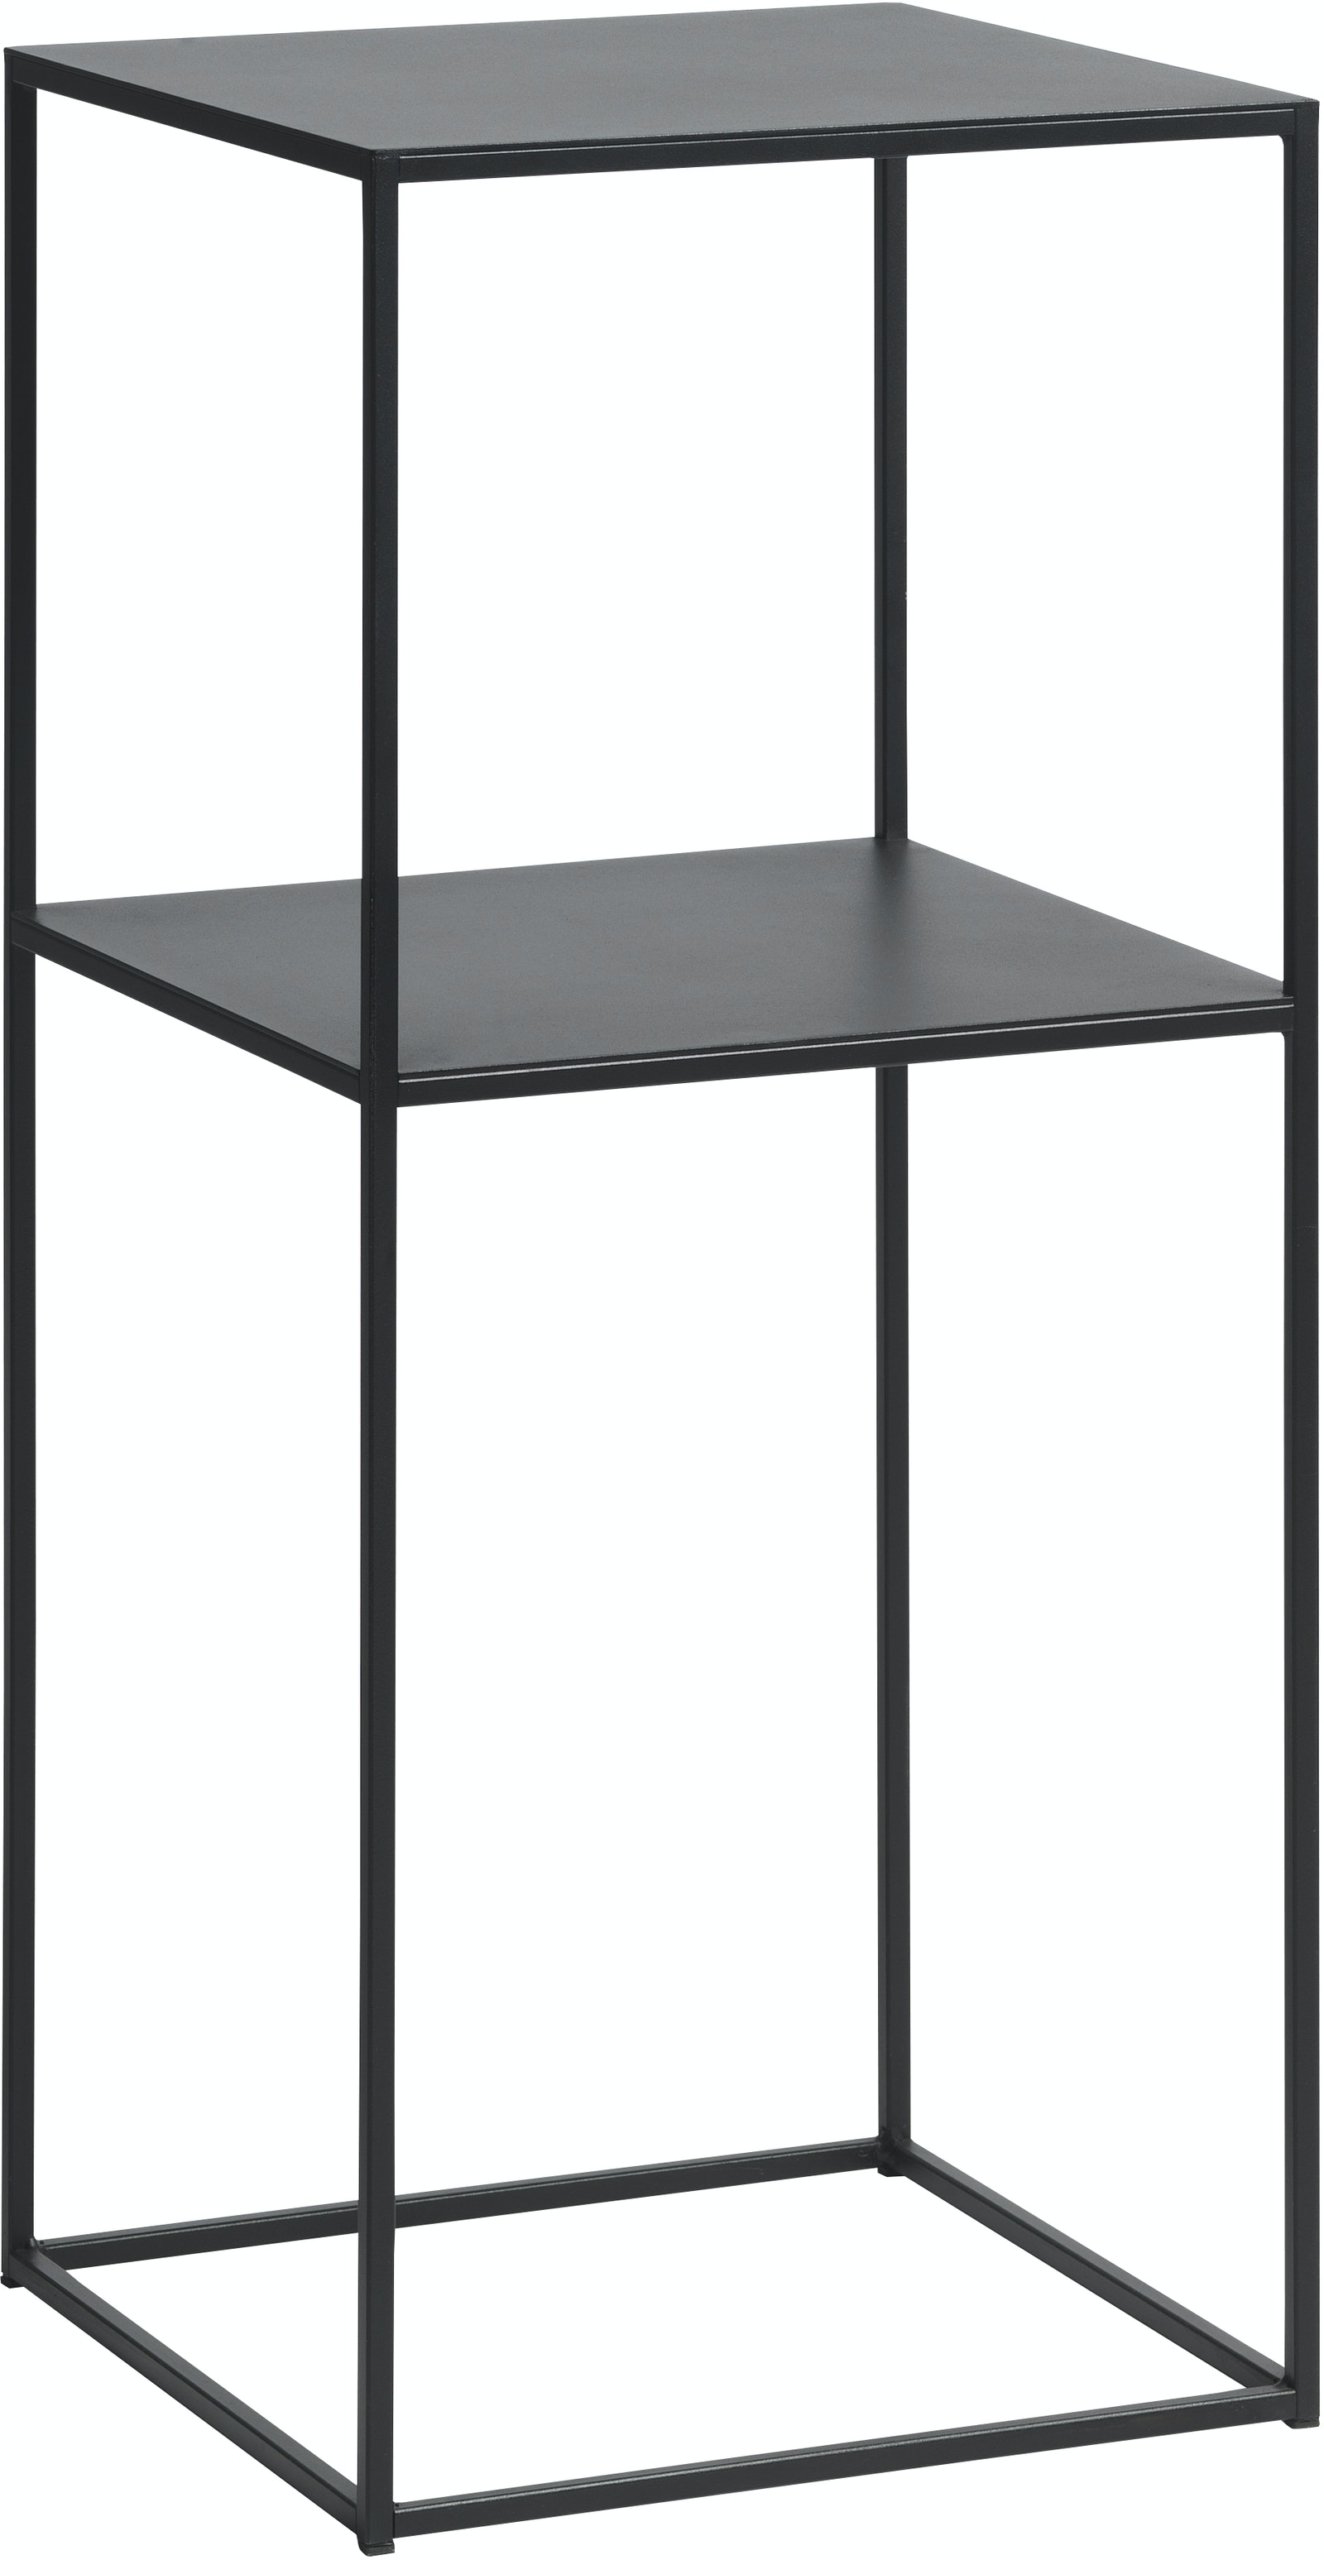 På billedet ser du variationen Pebble, Pedestal bord, Metal fra brandet Unique Furniture i en størrelse H: 80 cm. x B: 35 cm. x L: 35 cm. i farven Sort